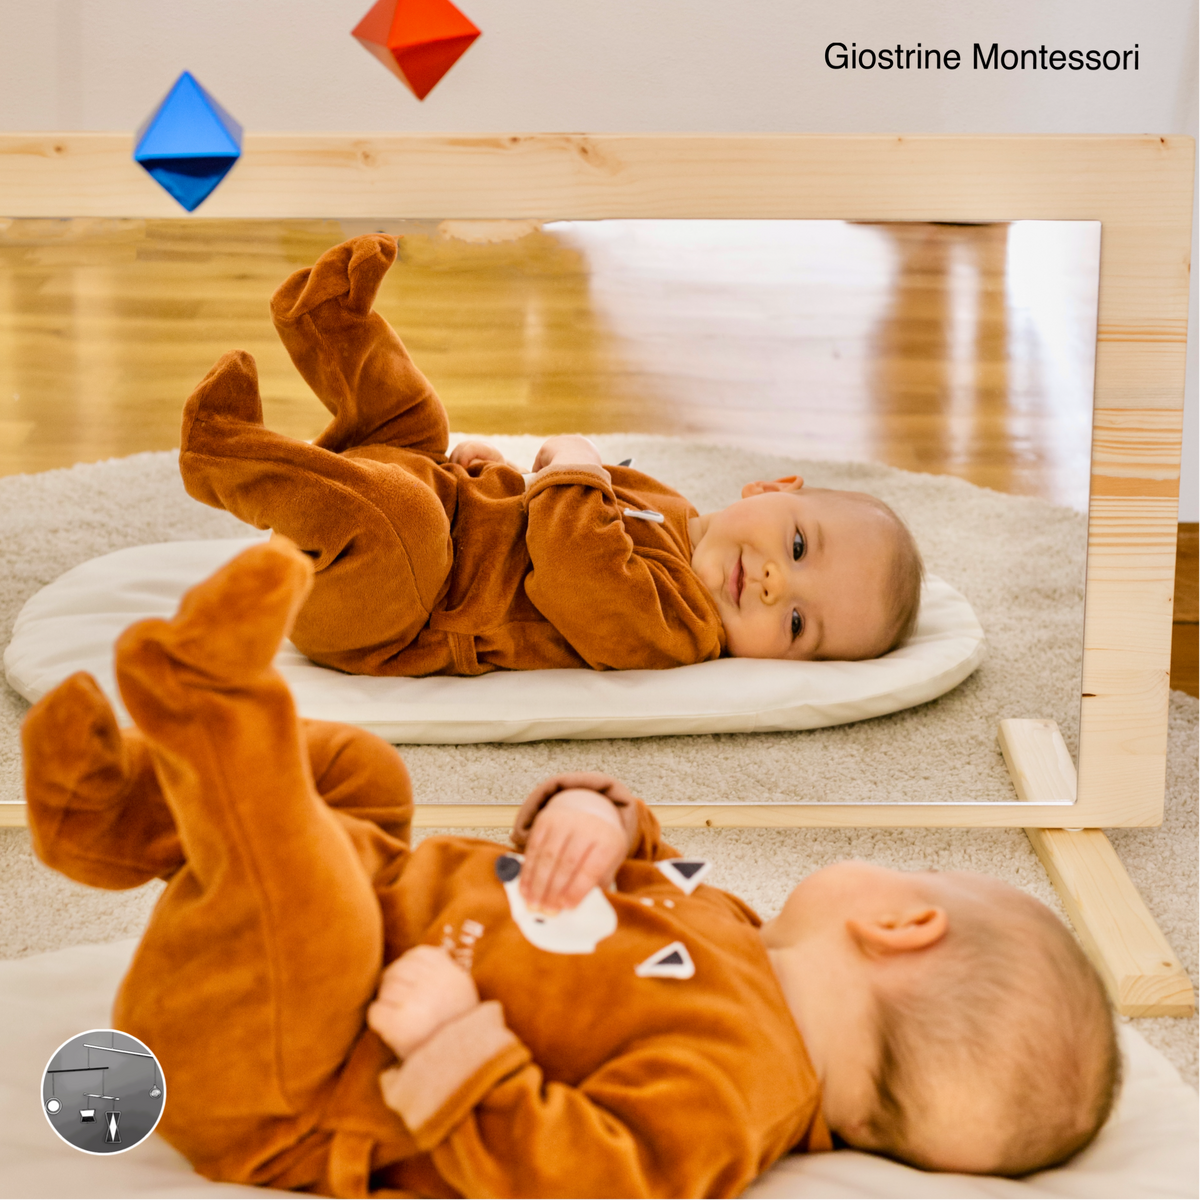 Specchio Montessori in legno naturale Bianco 100x60cm (metacrilato  infrangibile)